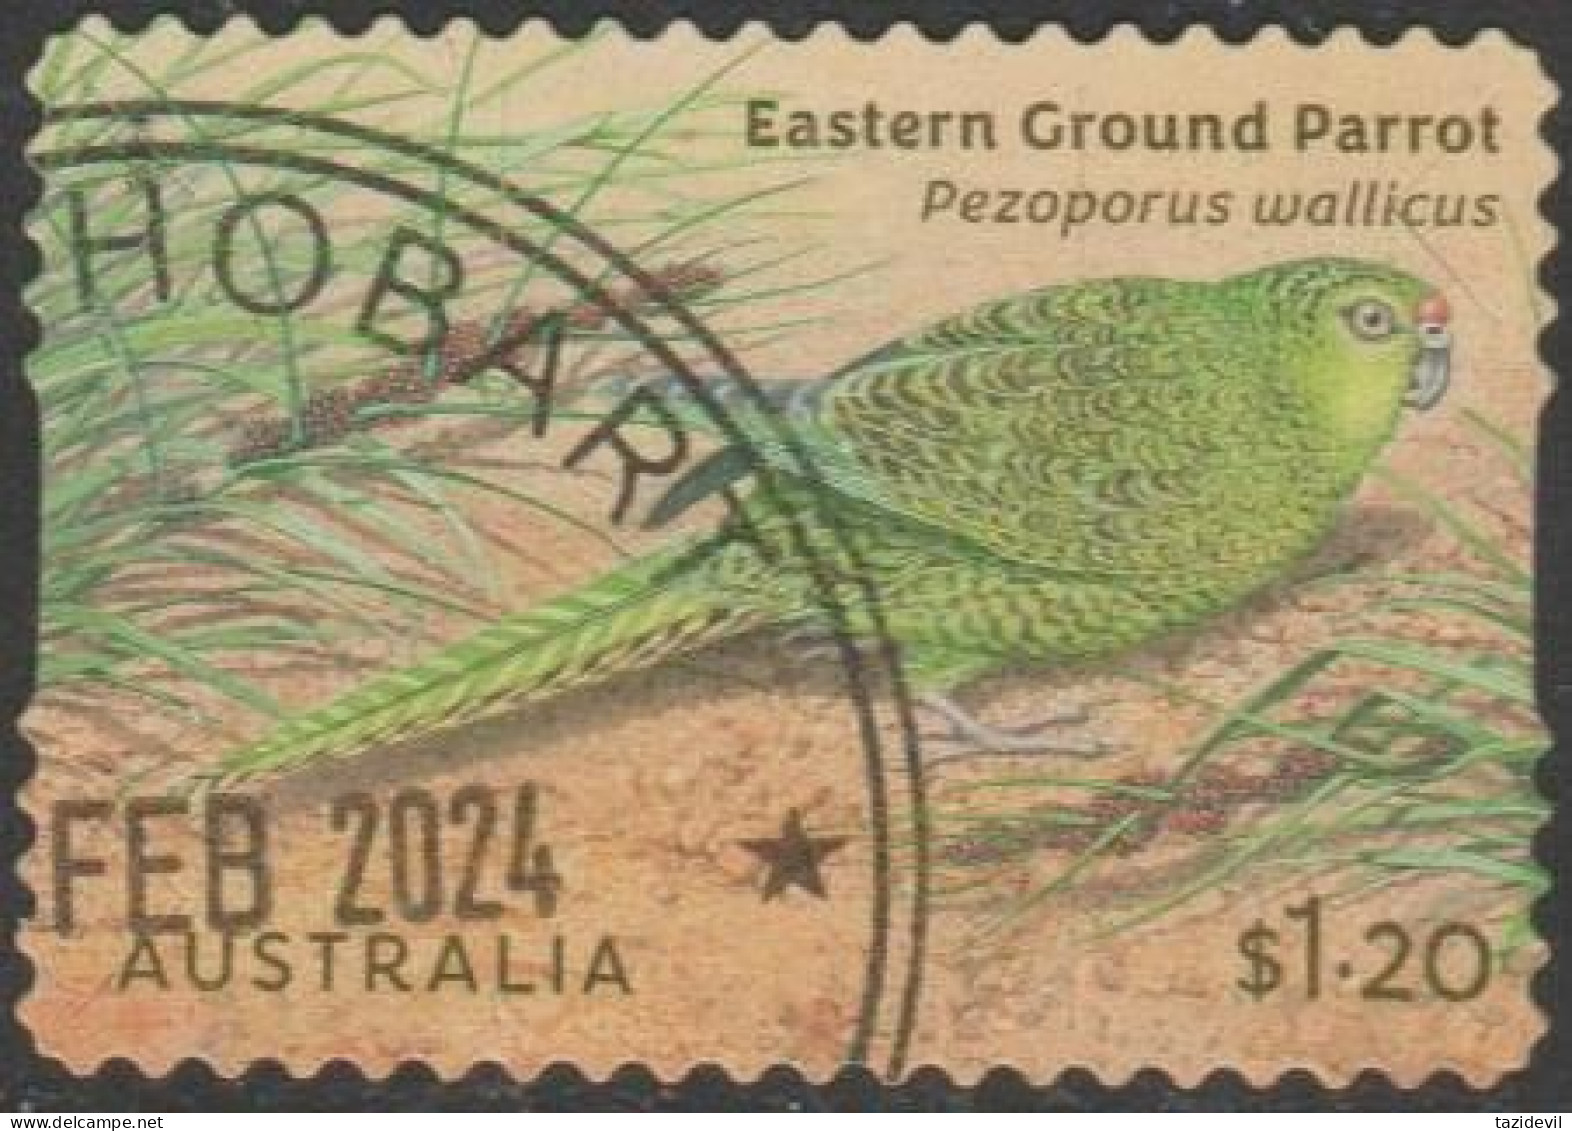 AUSTRALIA - DIE-CUT-USED 2024 $1.20 Australian Ground Parrots - Eastern Ground Parrot - Oblitérés